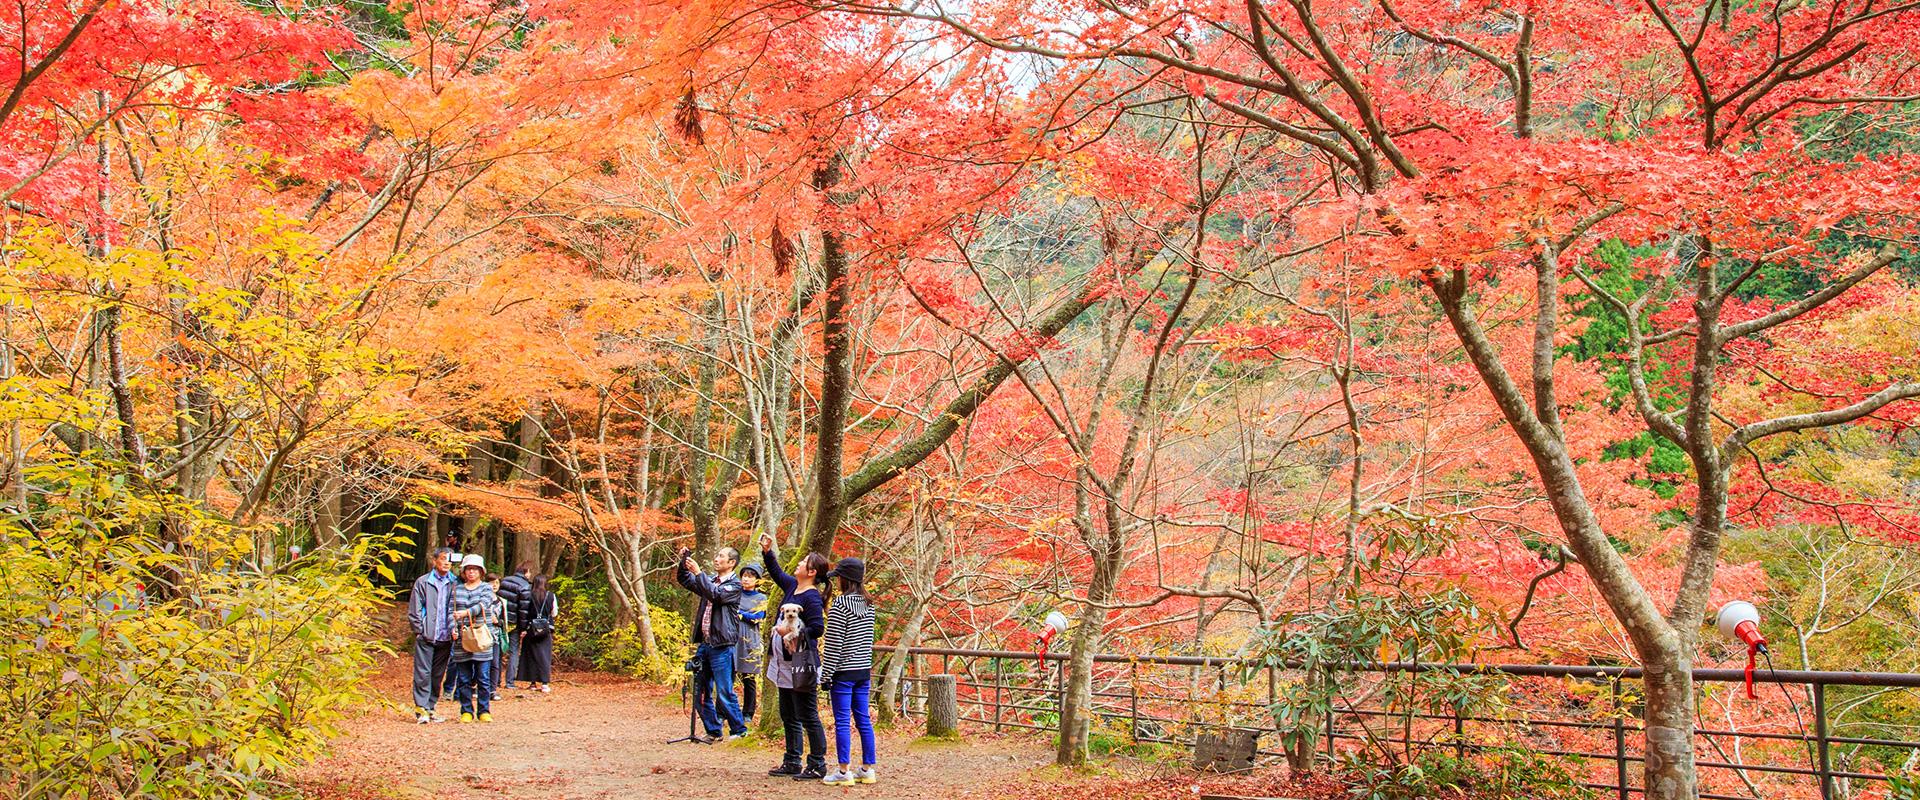 岡山で絶対見ておくべき紅葉スポット10選 旬のおすすめ 特集 岡山観光web 公式 岡山県の観光 旅行情報ならココ